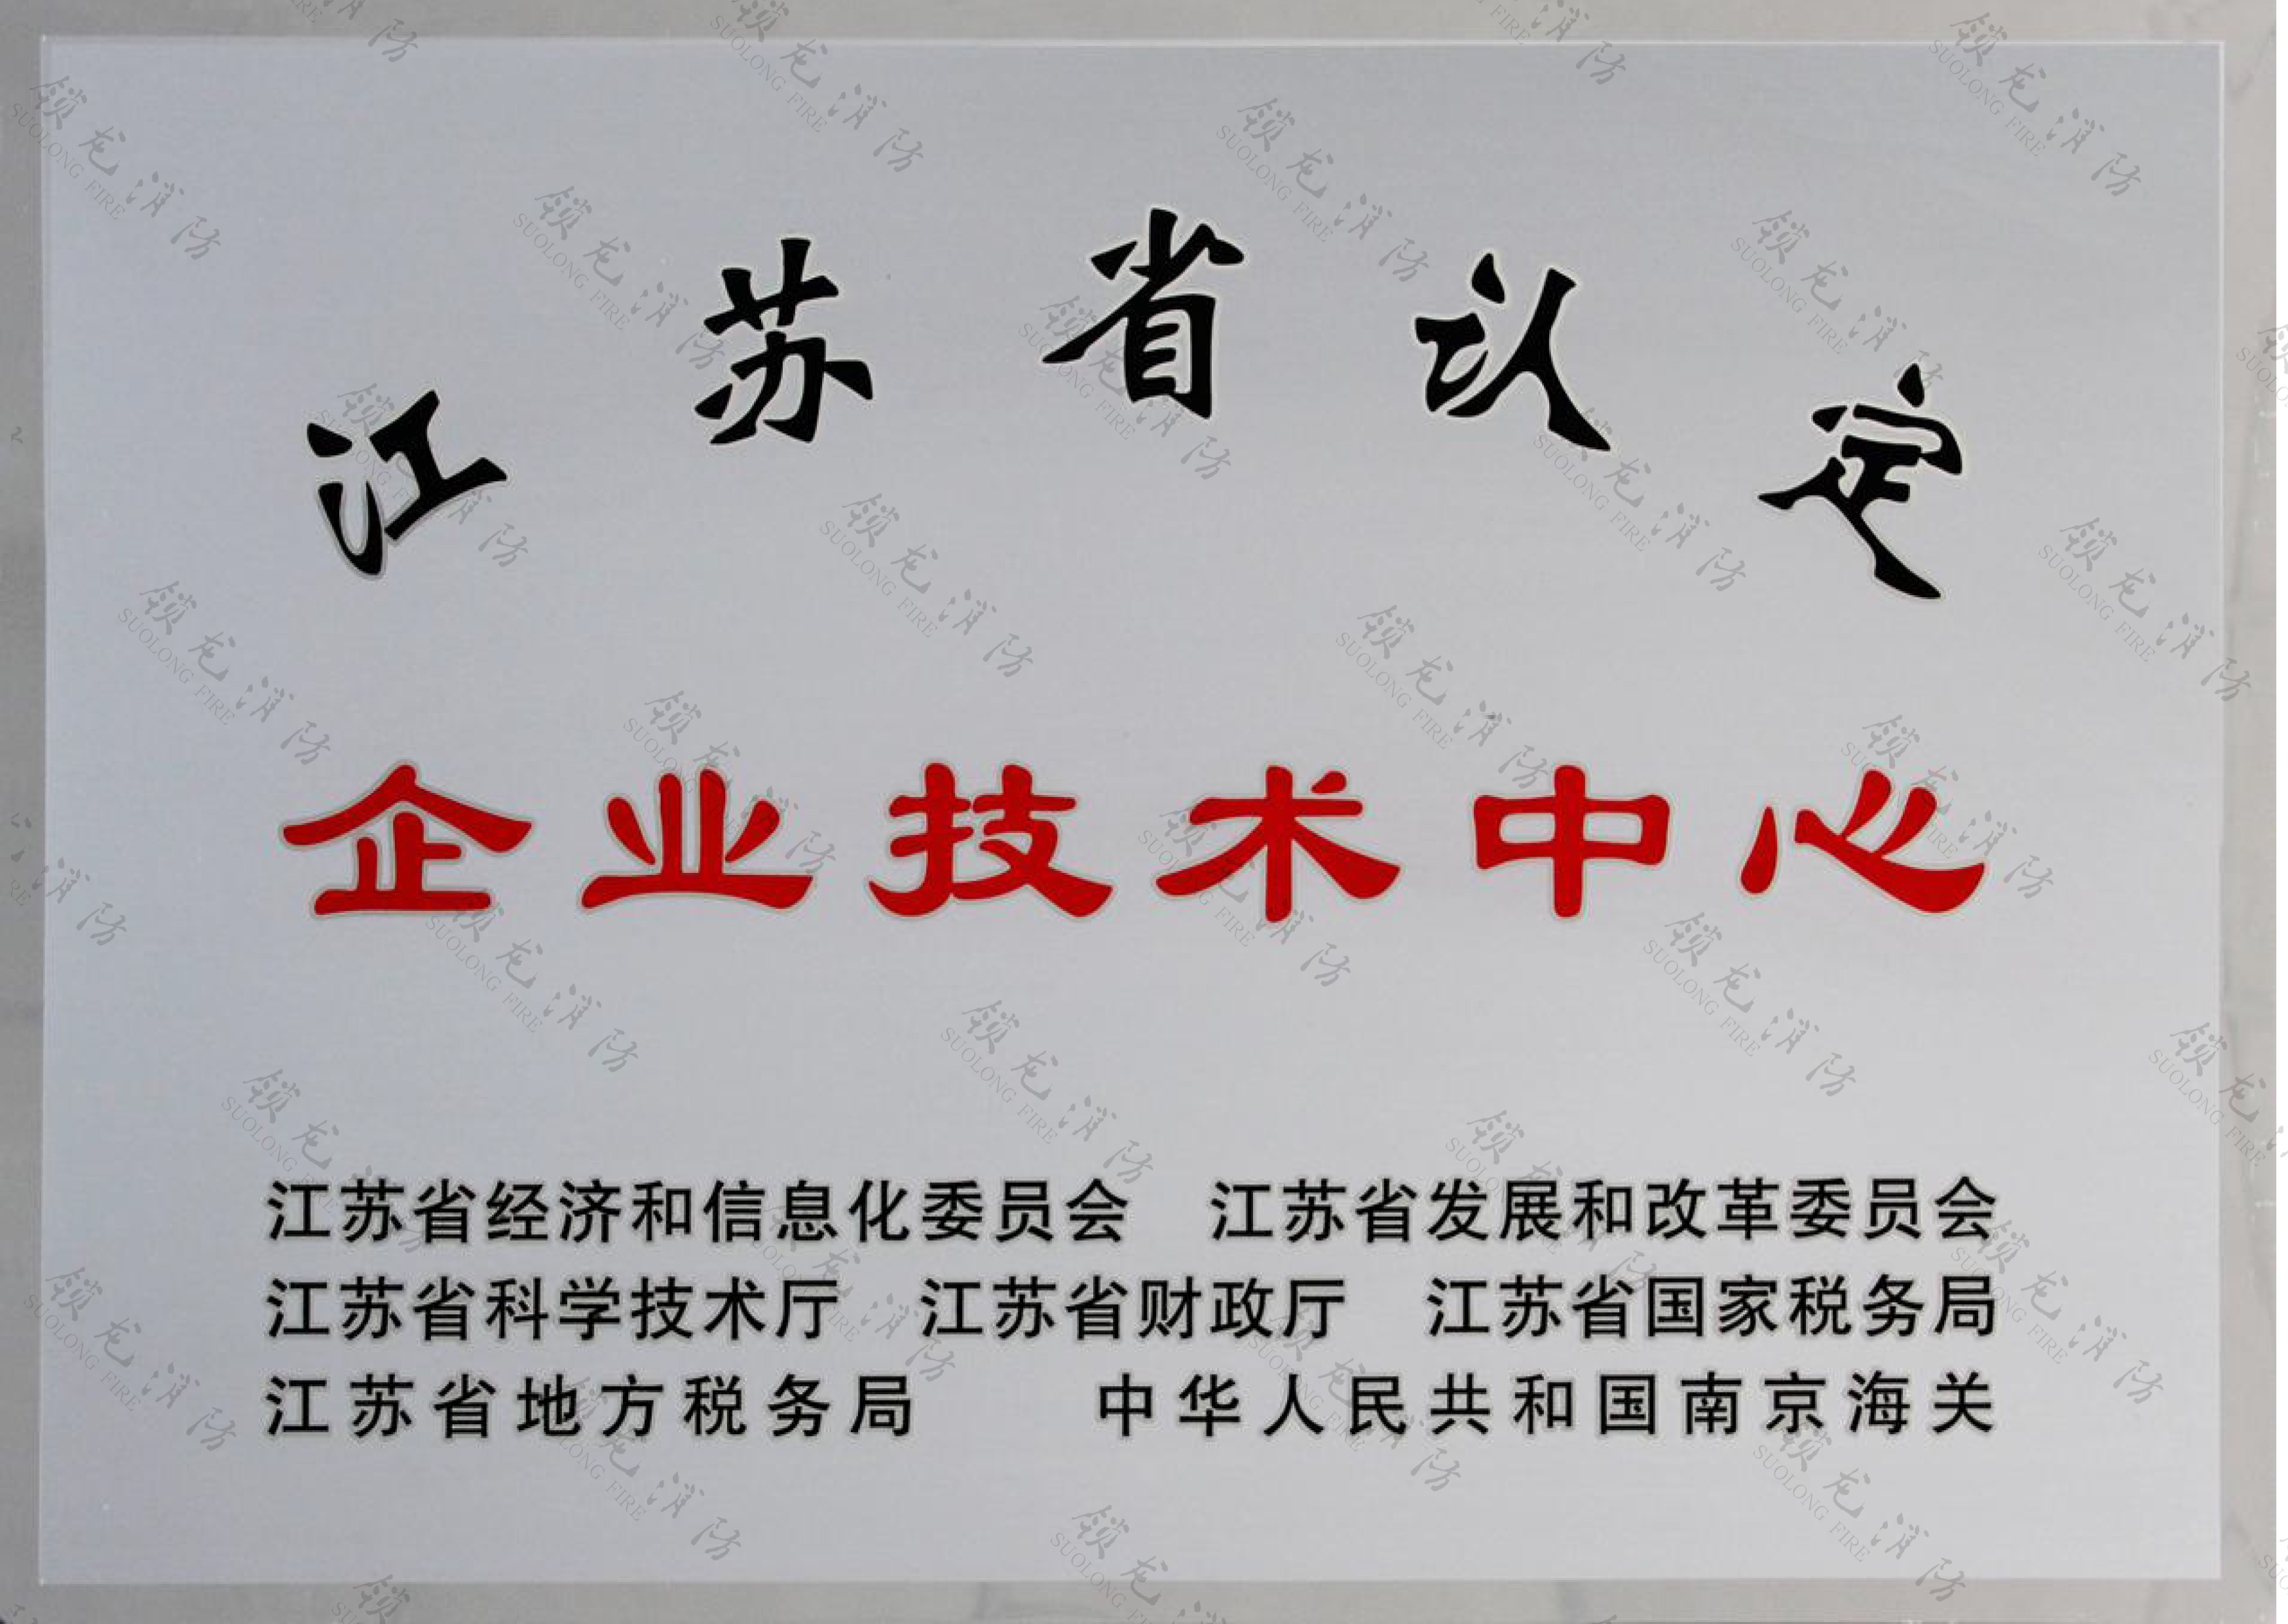 江蘇省認定企業技術中心